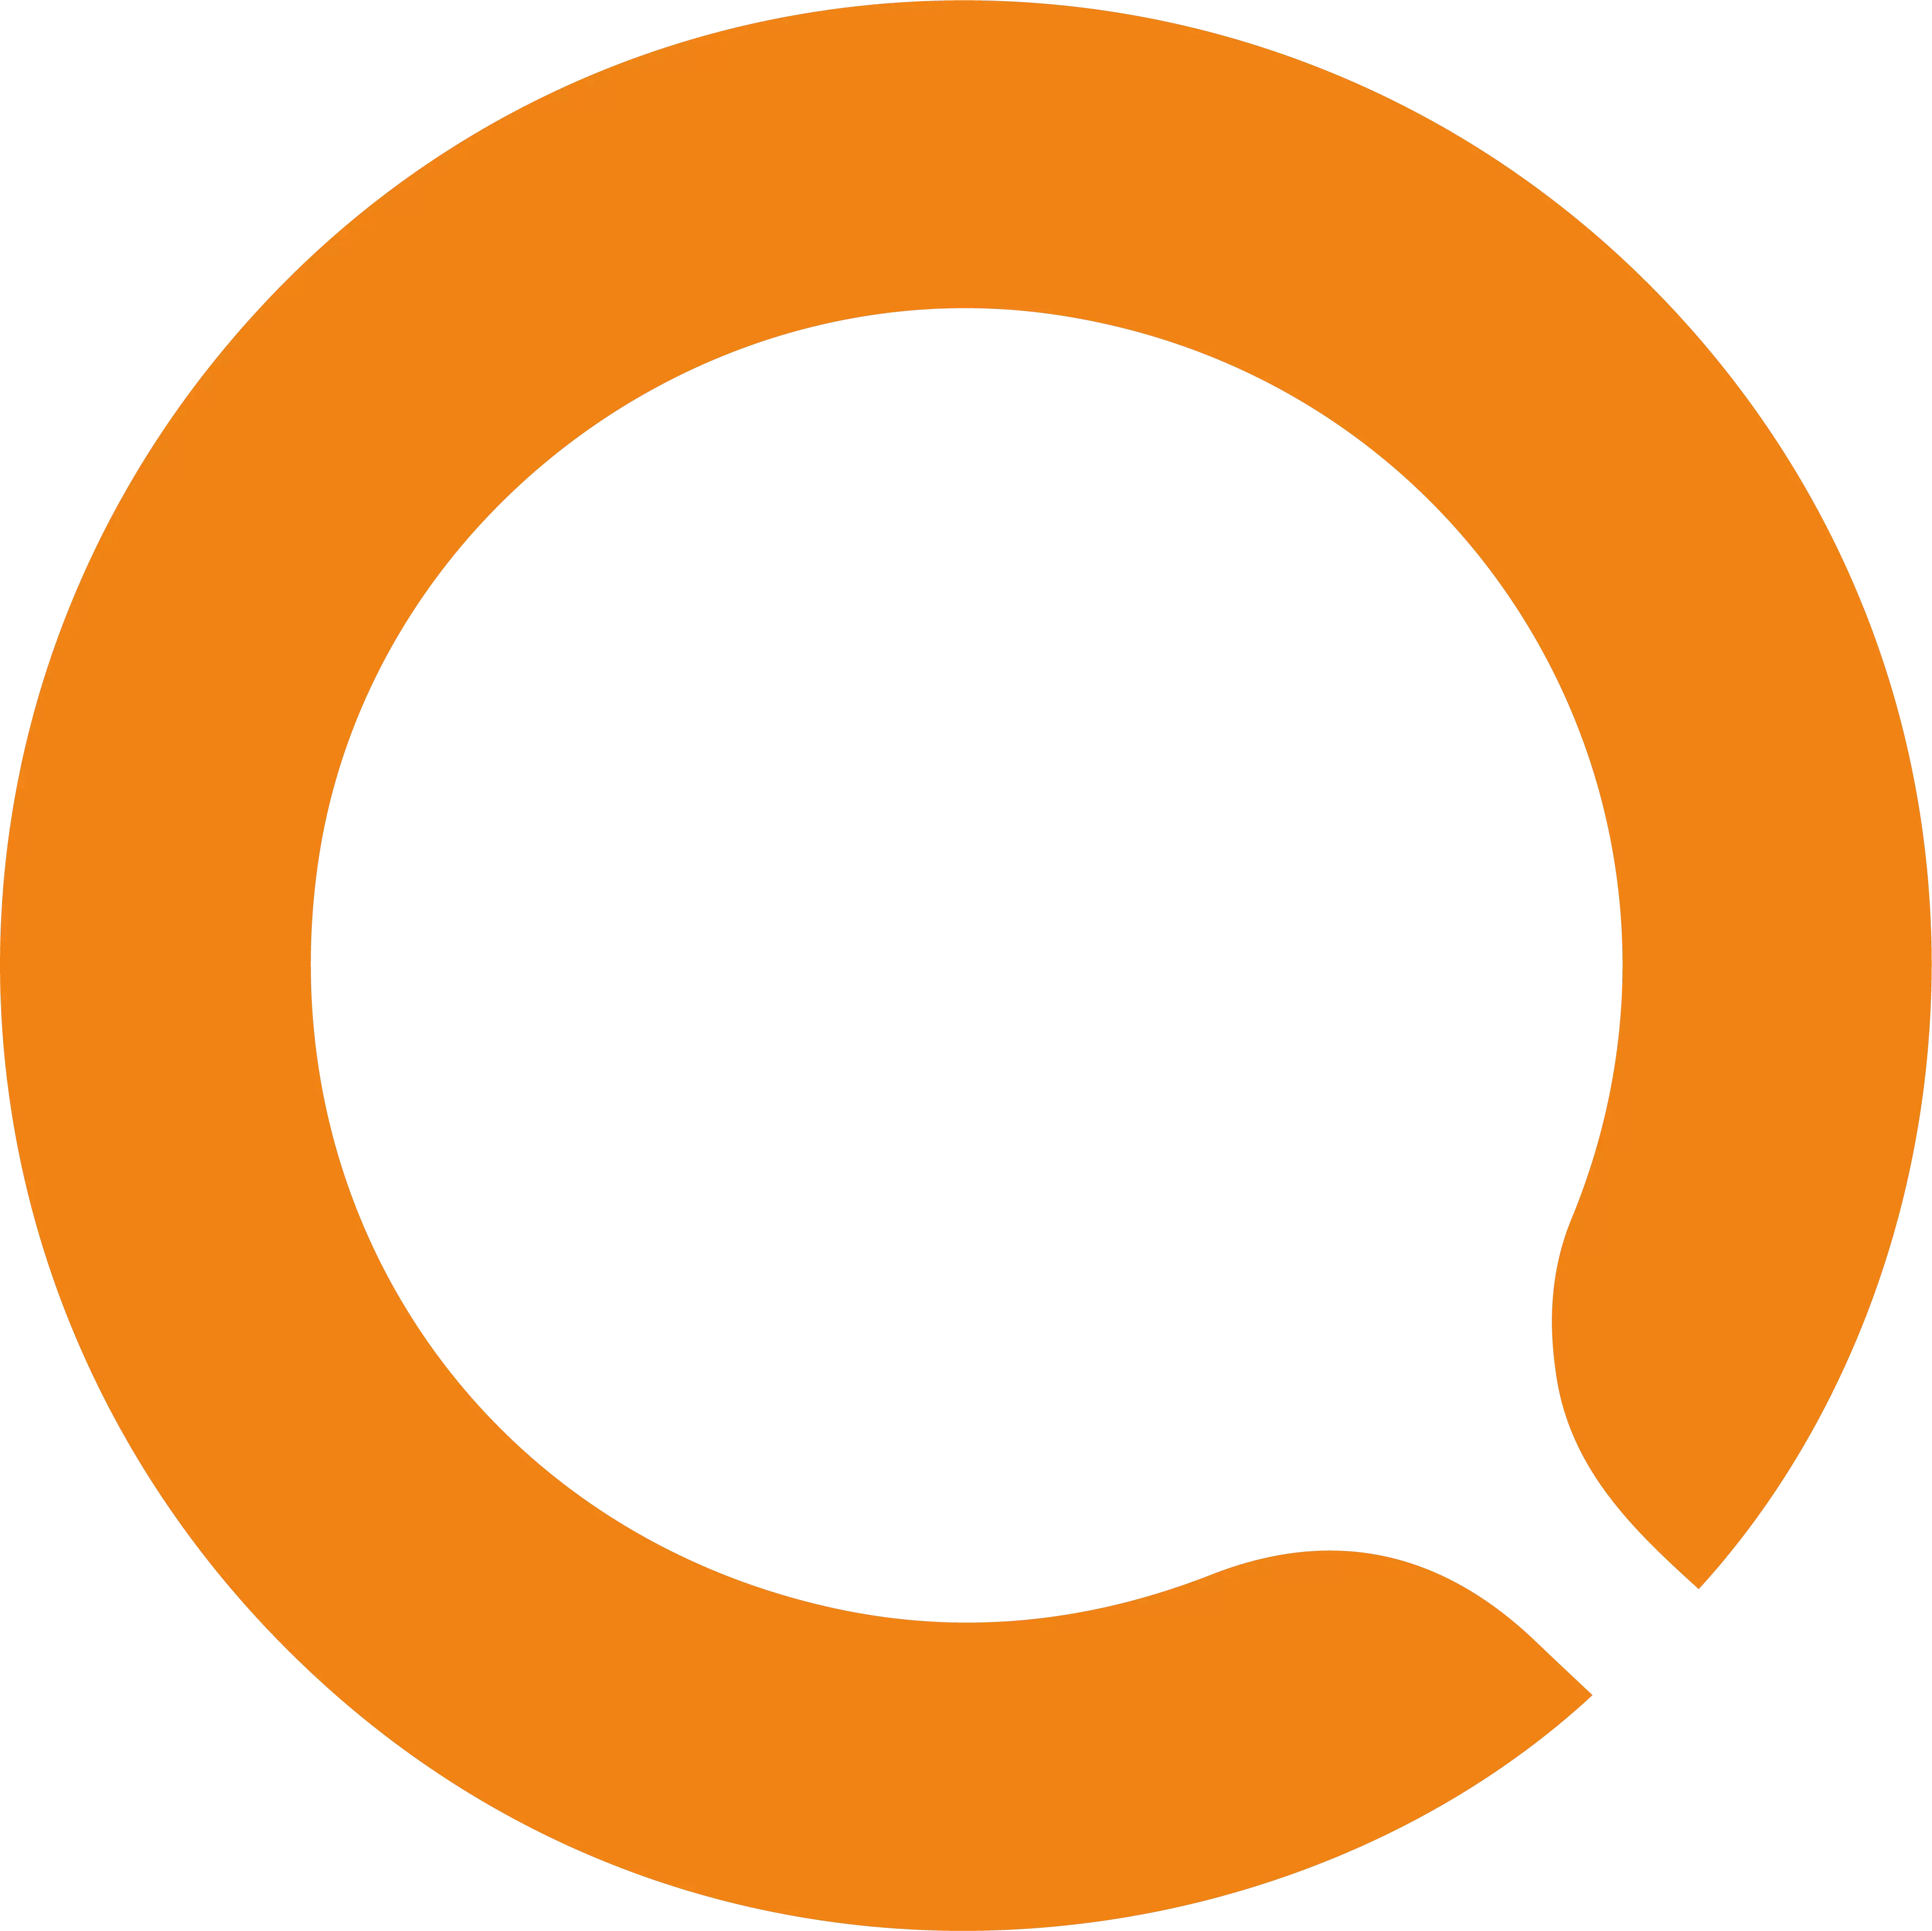 Quebeccirculaire.org, la plateforme qui rassemble les acteurs de l’économie circulaire au Québec 